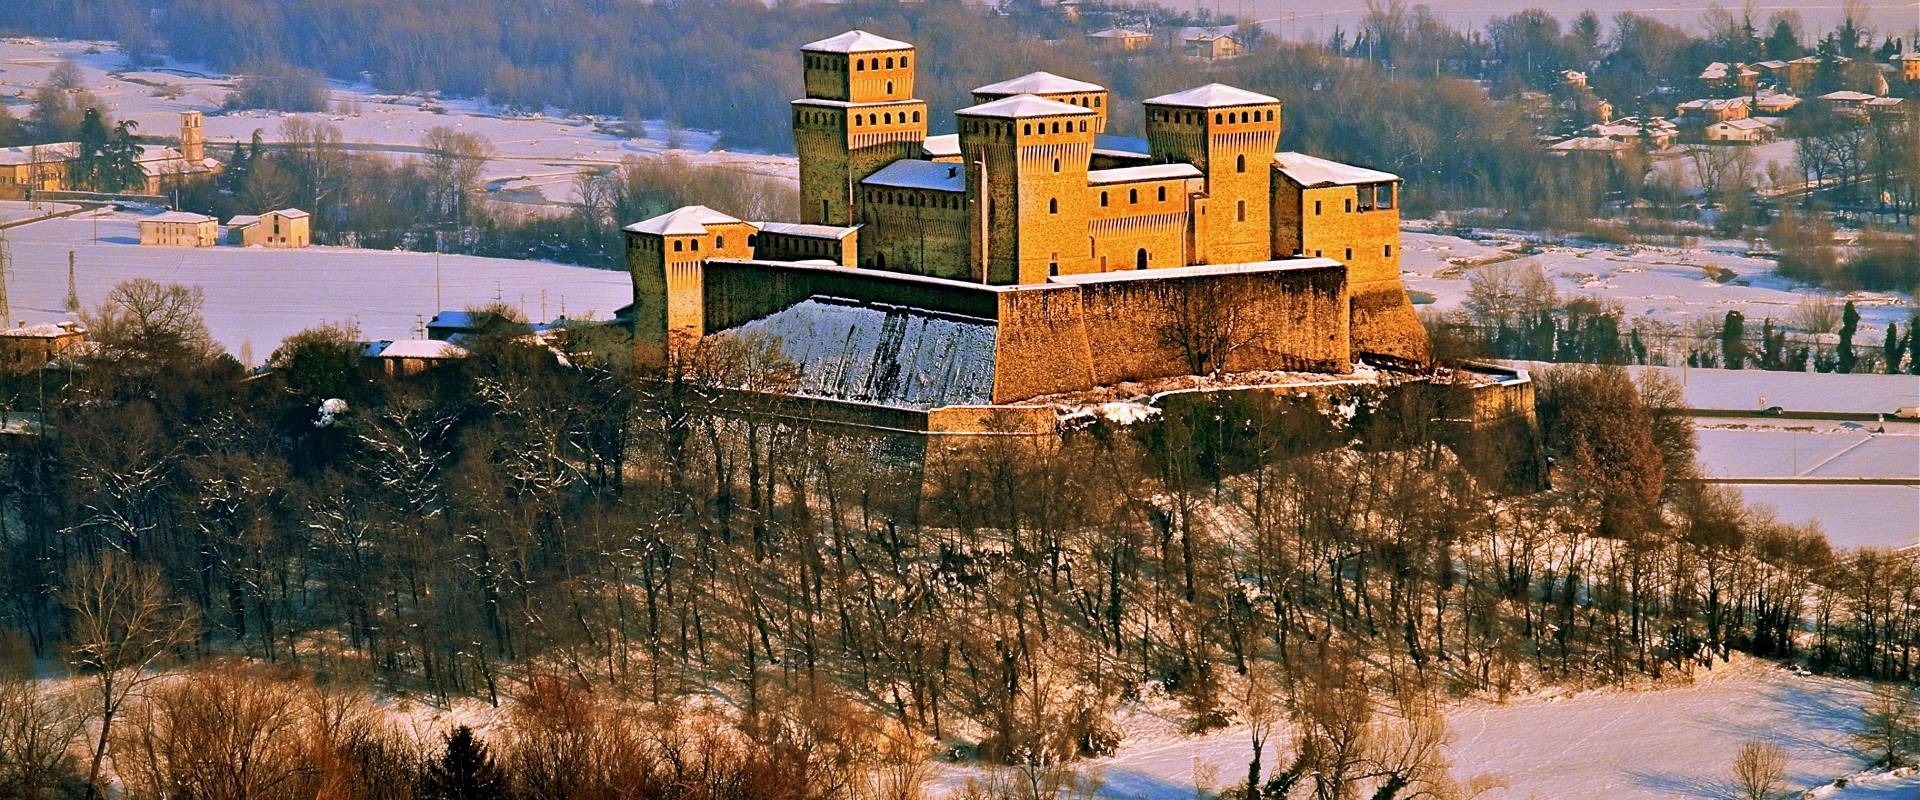 Castello di Torrechiara - Colline Parmensi foto di Caba2011